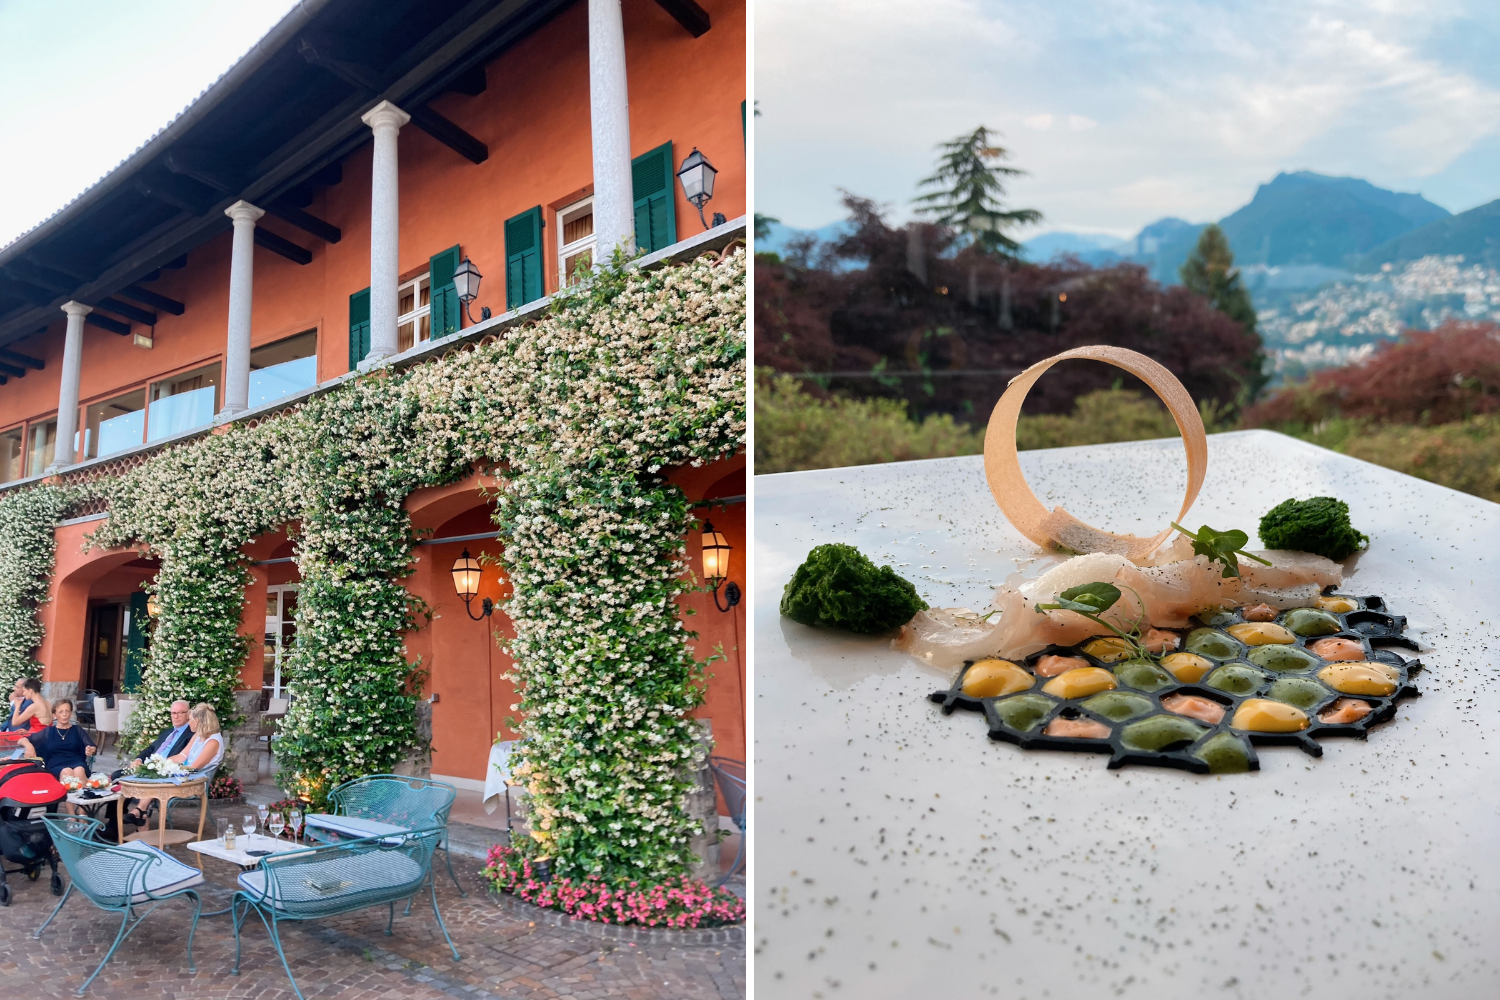 Tessin kulinarisch entdecken in der Villa Principe Leopoldo, wo Cristian Moreschi auftischt